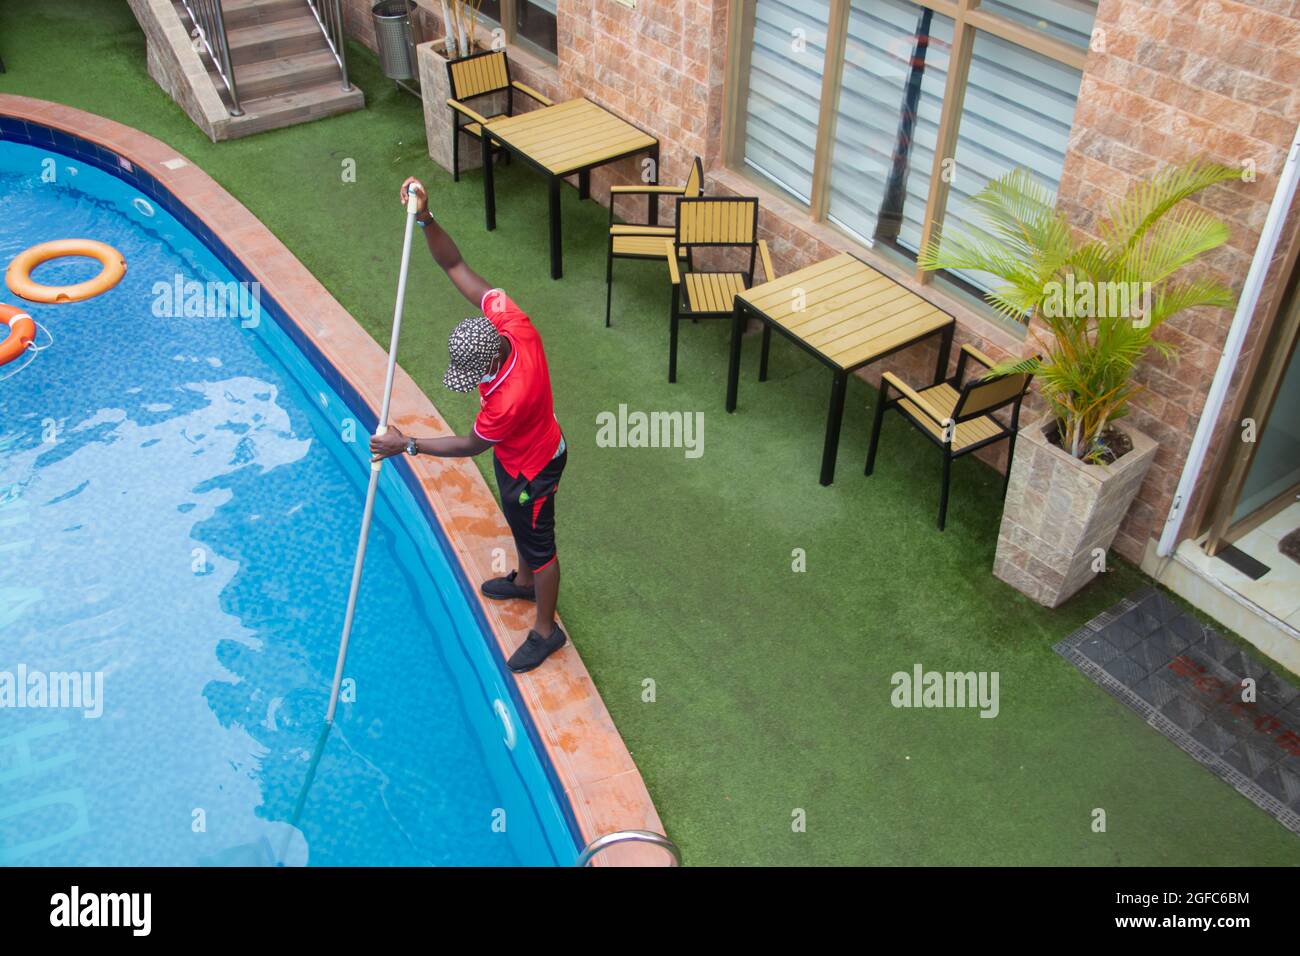 Pulizia della piscina da pool-guy, utilizzando la rete. Piante decorative accanto alla piscina Foto Stock